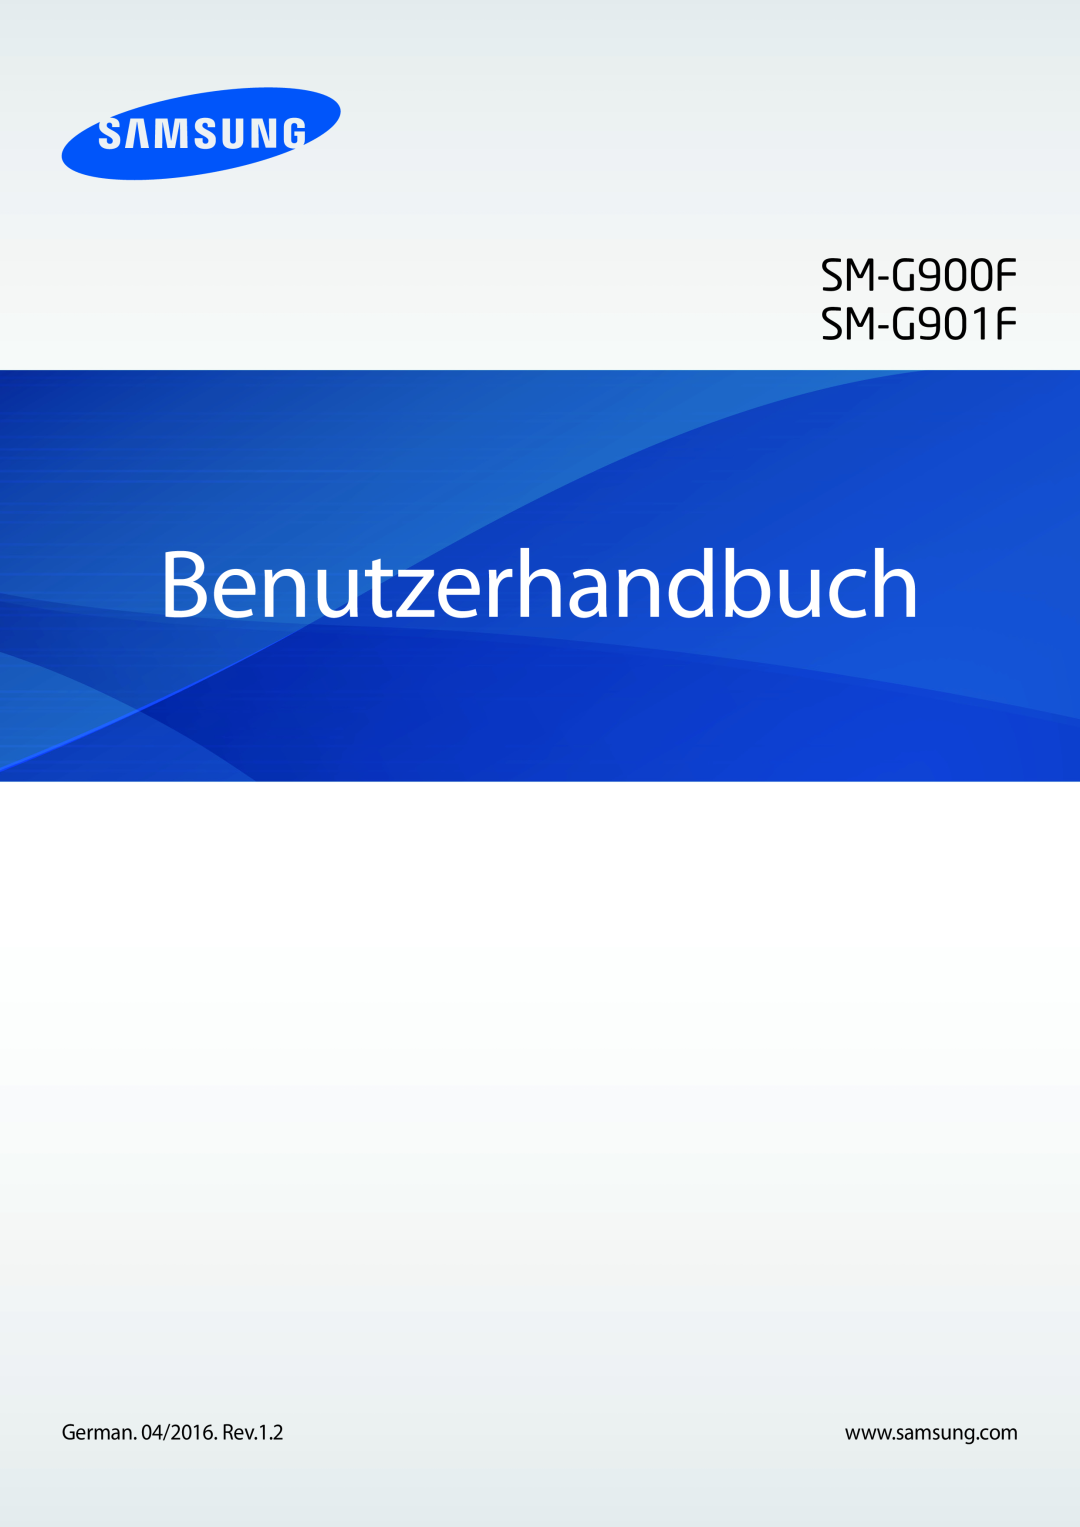 Samsung SM-G901FZDABAL, SM-G901FZKACOS, SM-G901FZWAVGR, SM-G901FZWADBT manual Benutzerhandbuch, SM-G900F SM-G901F 